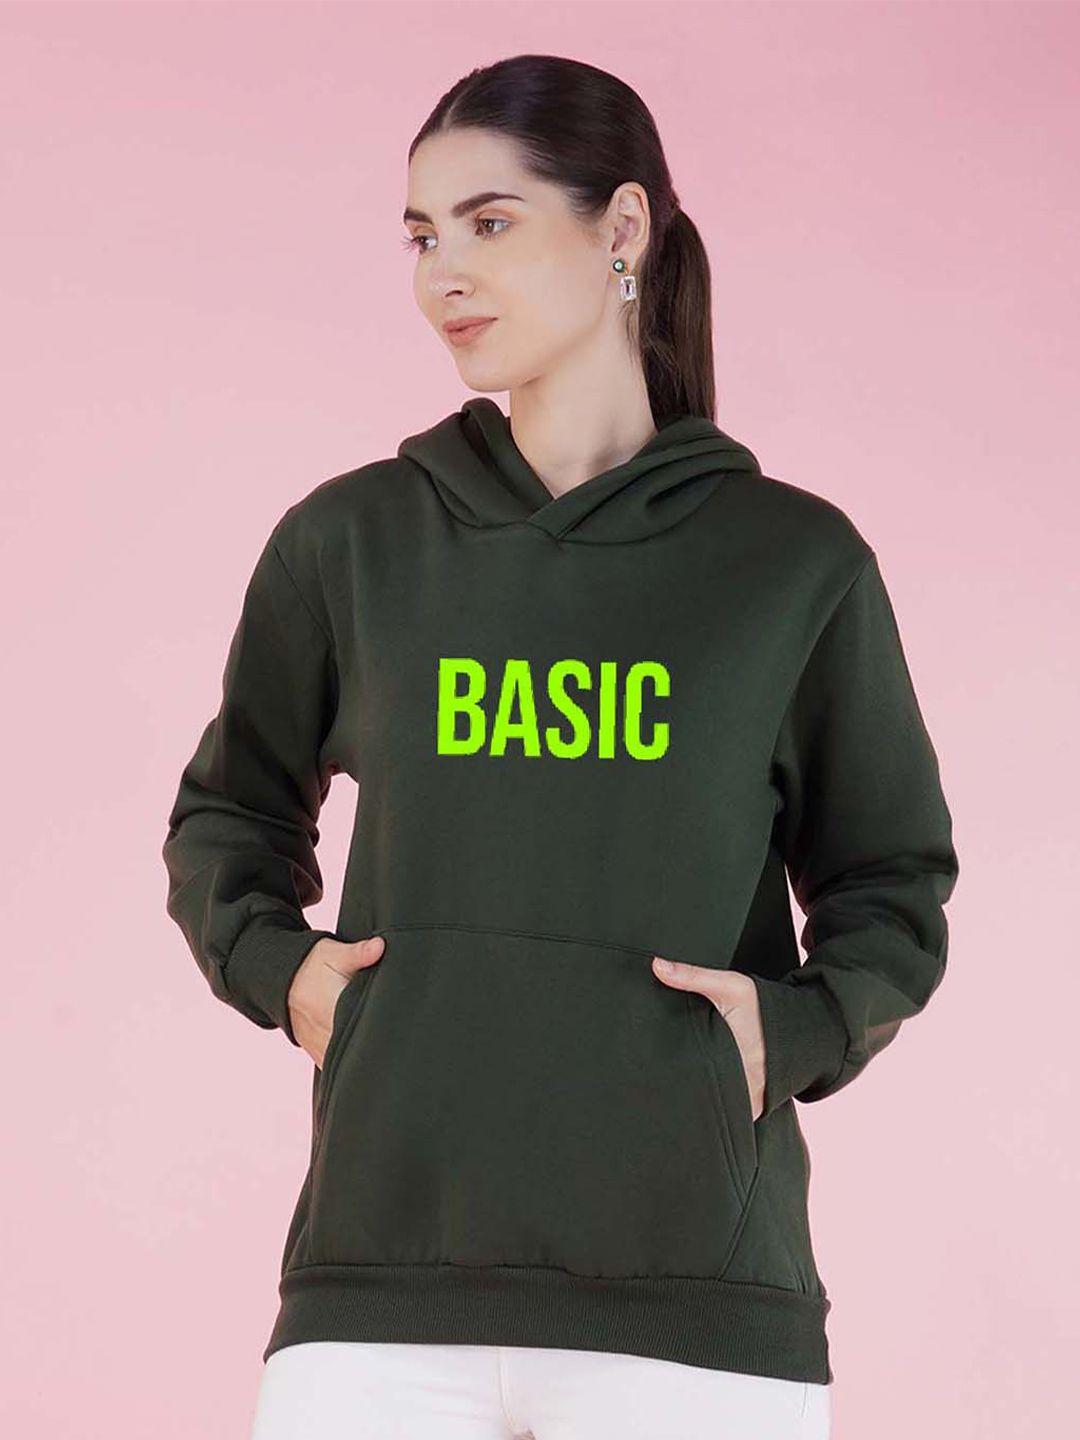 nusyl typography printed hooded fleece sweatshirt